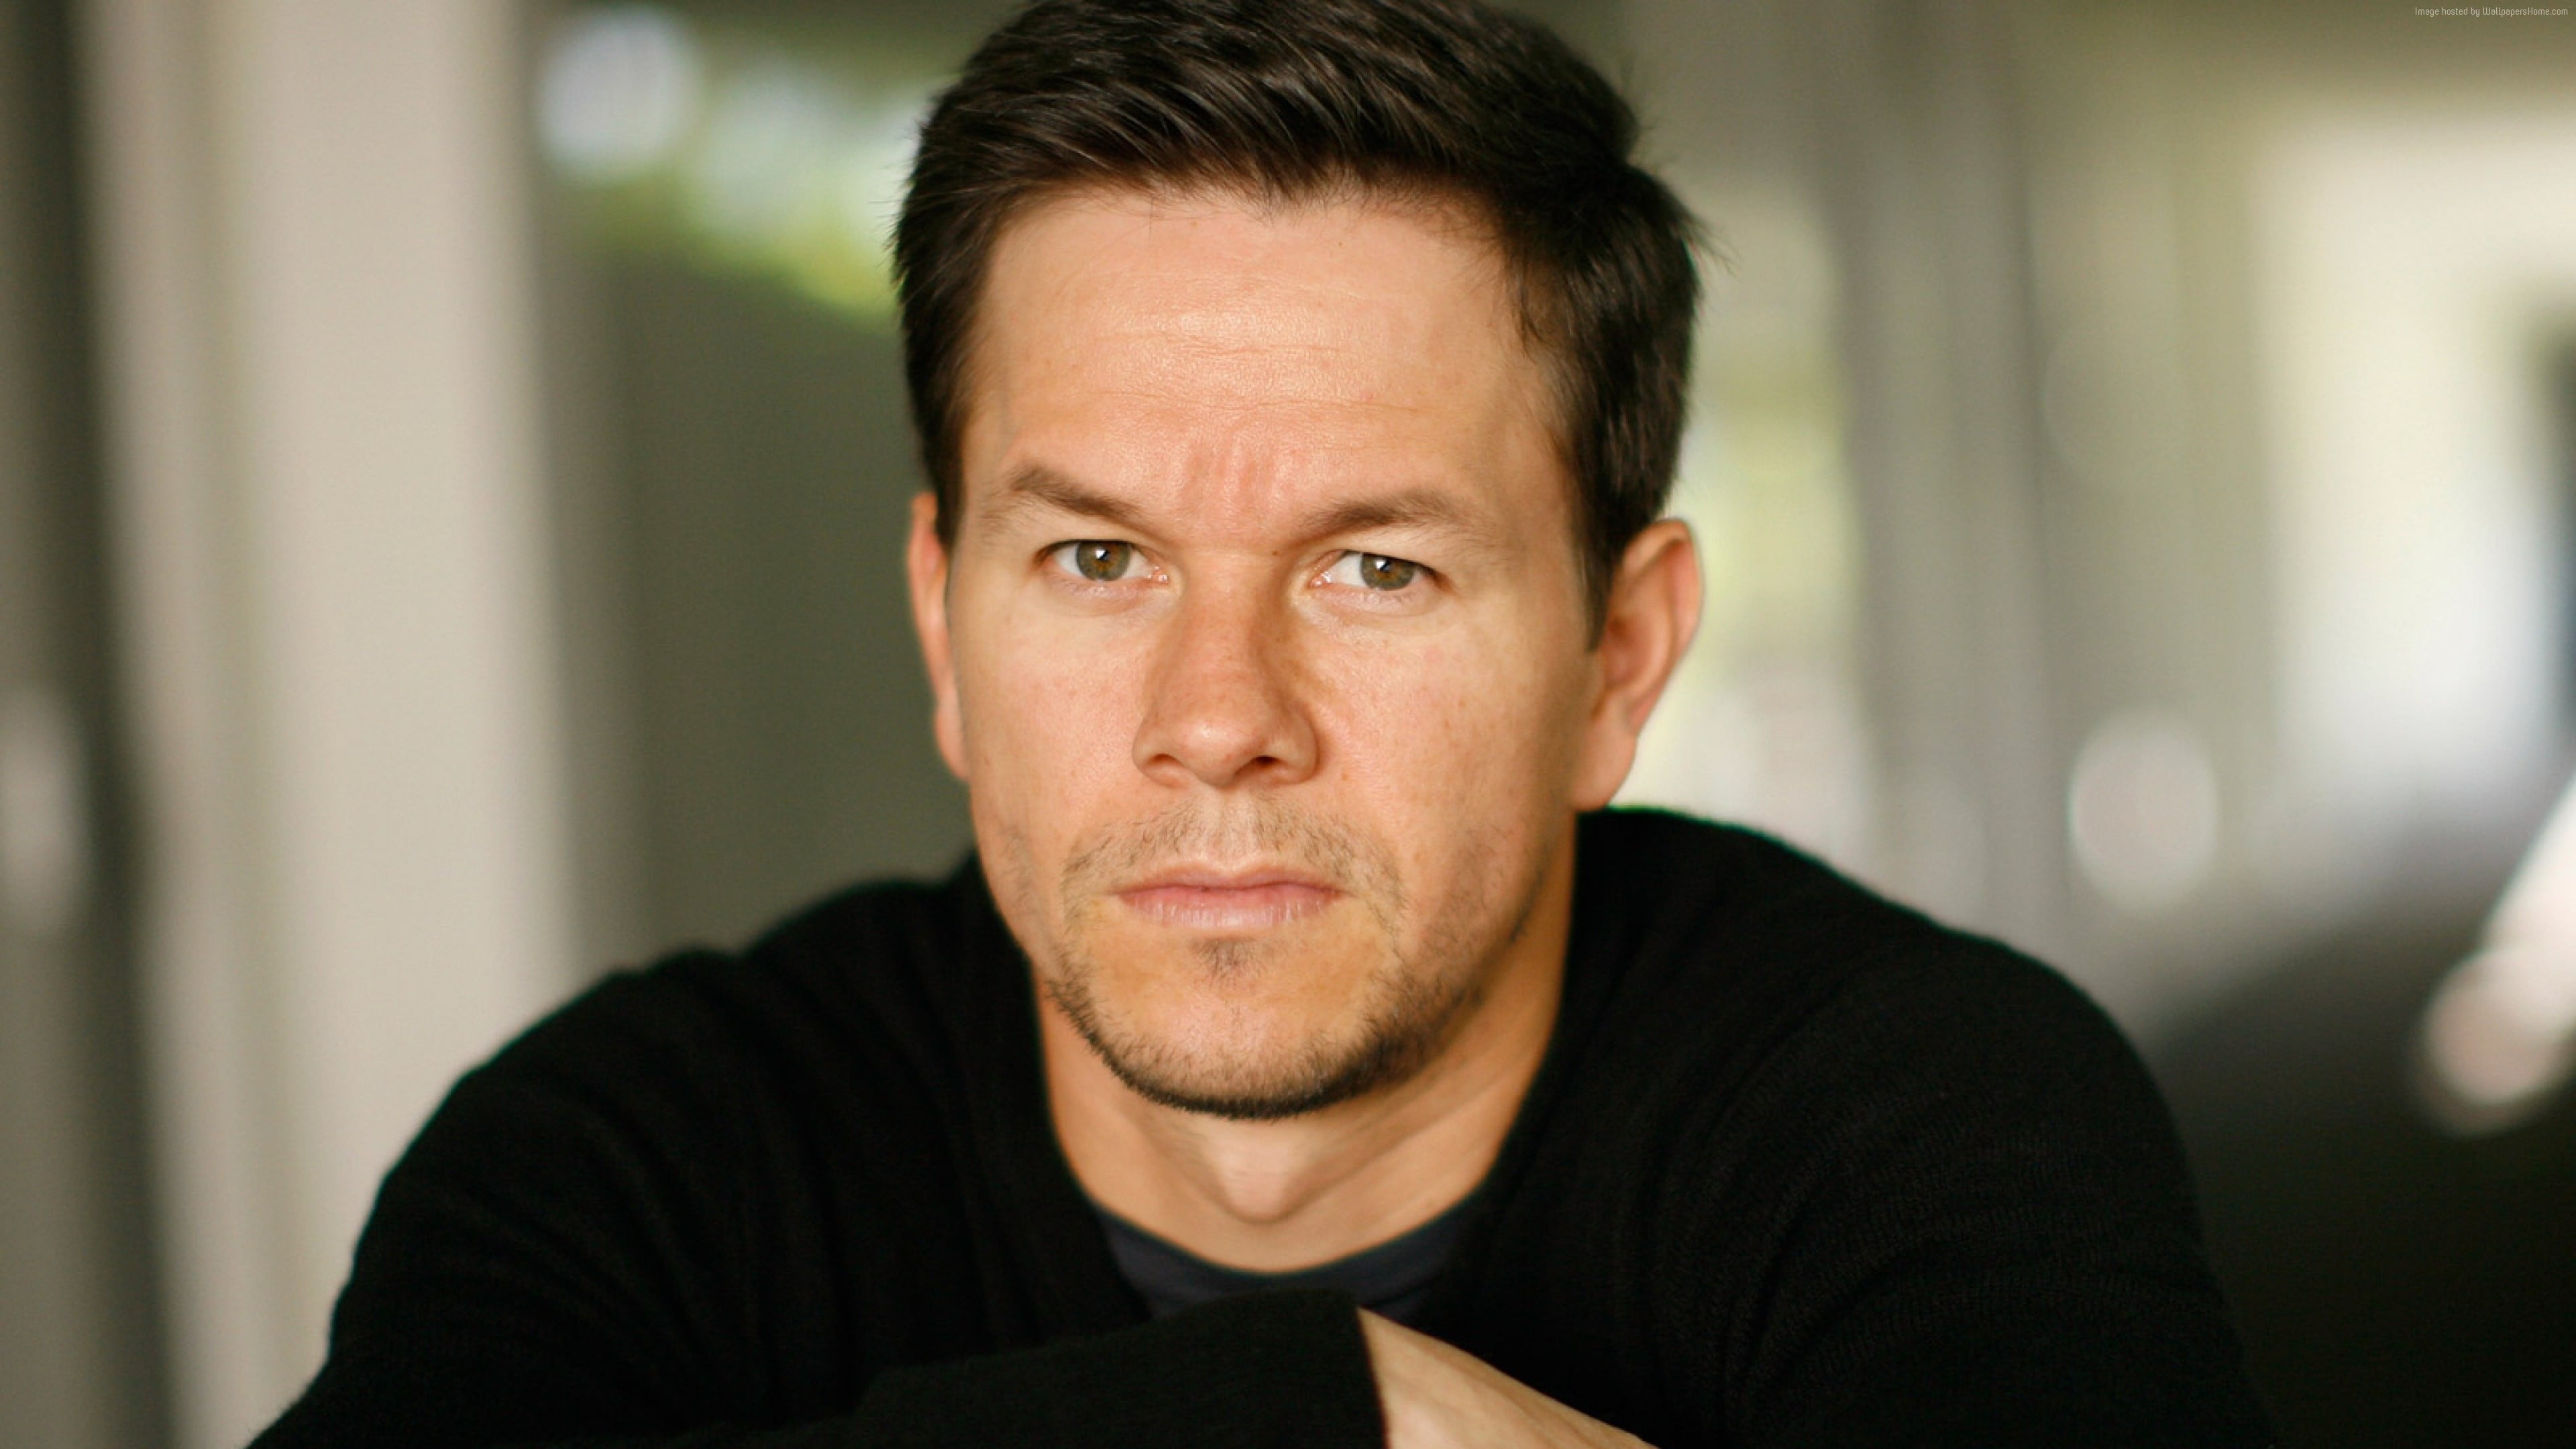 photo of Mark Wahlberg wearing black top